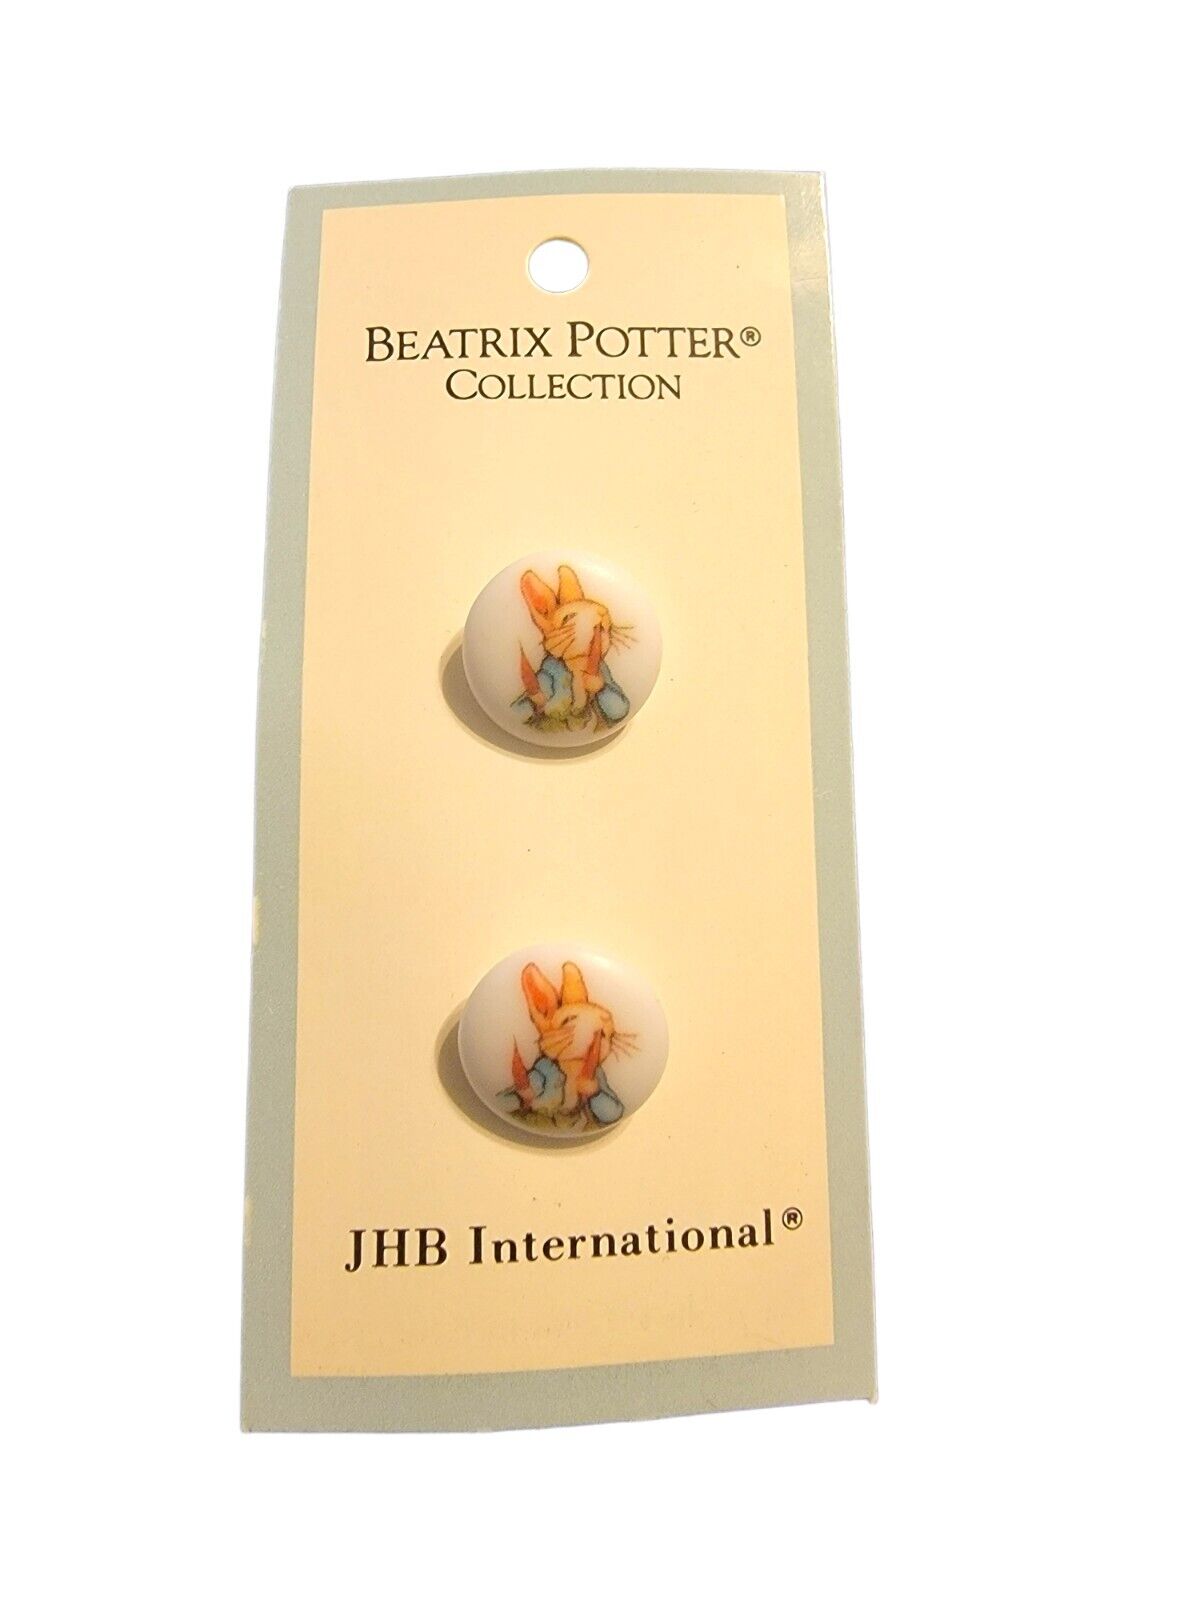 NOS Vintage JHB Beatrix Potter 1976 Peter Rabbit Carrots Collection Japan 5/8